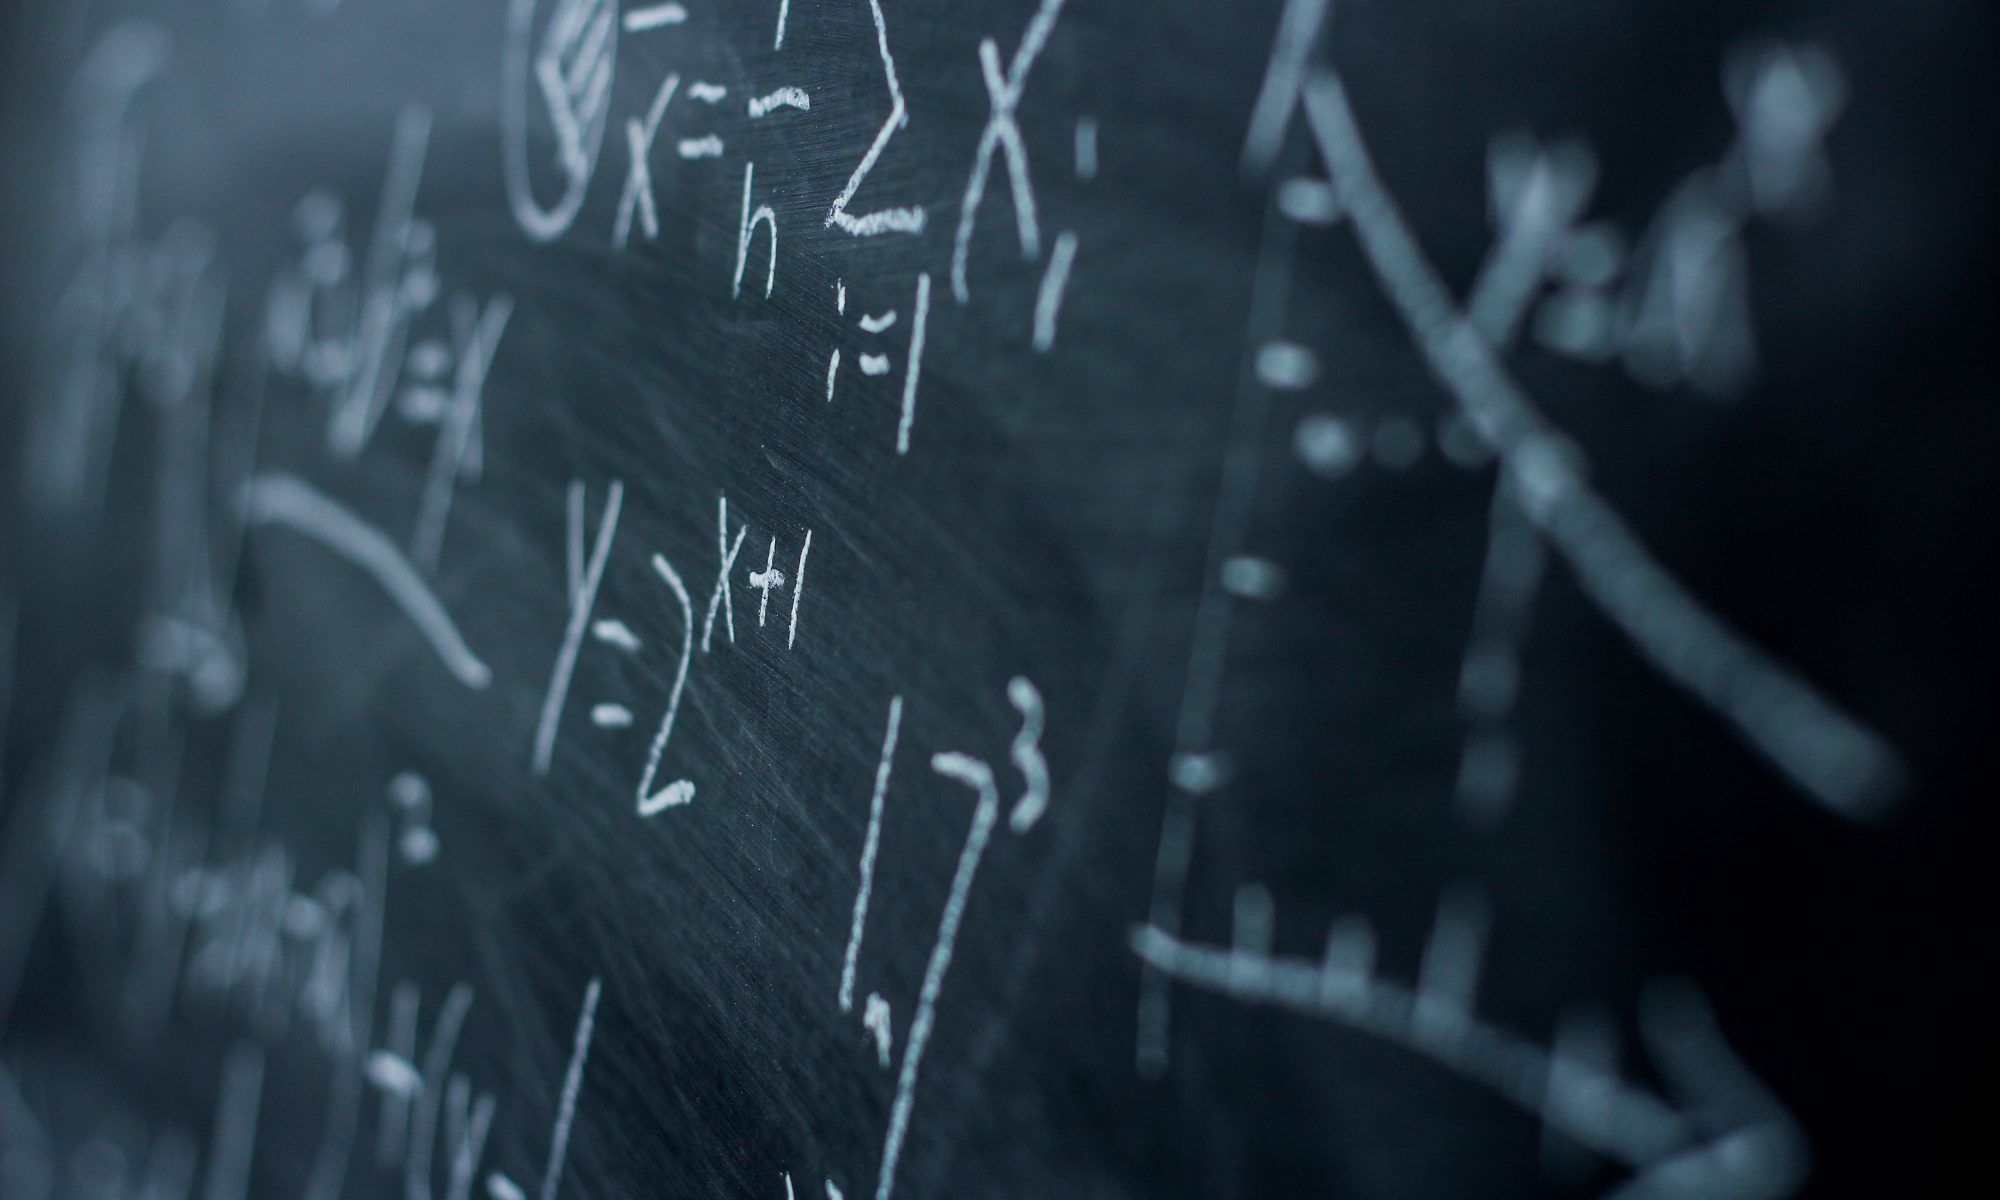 Math formulas written by white chalk on a blackboard.